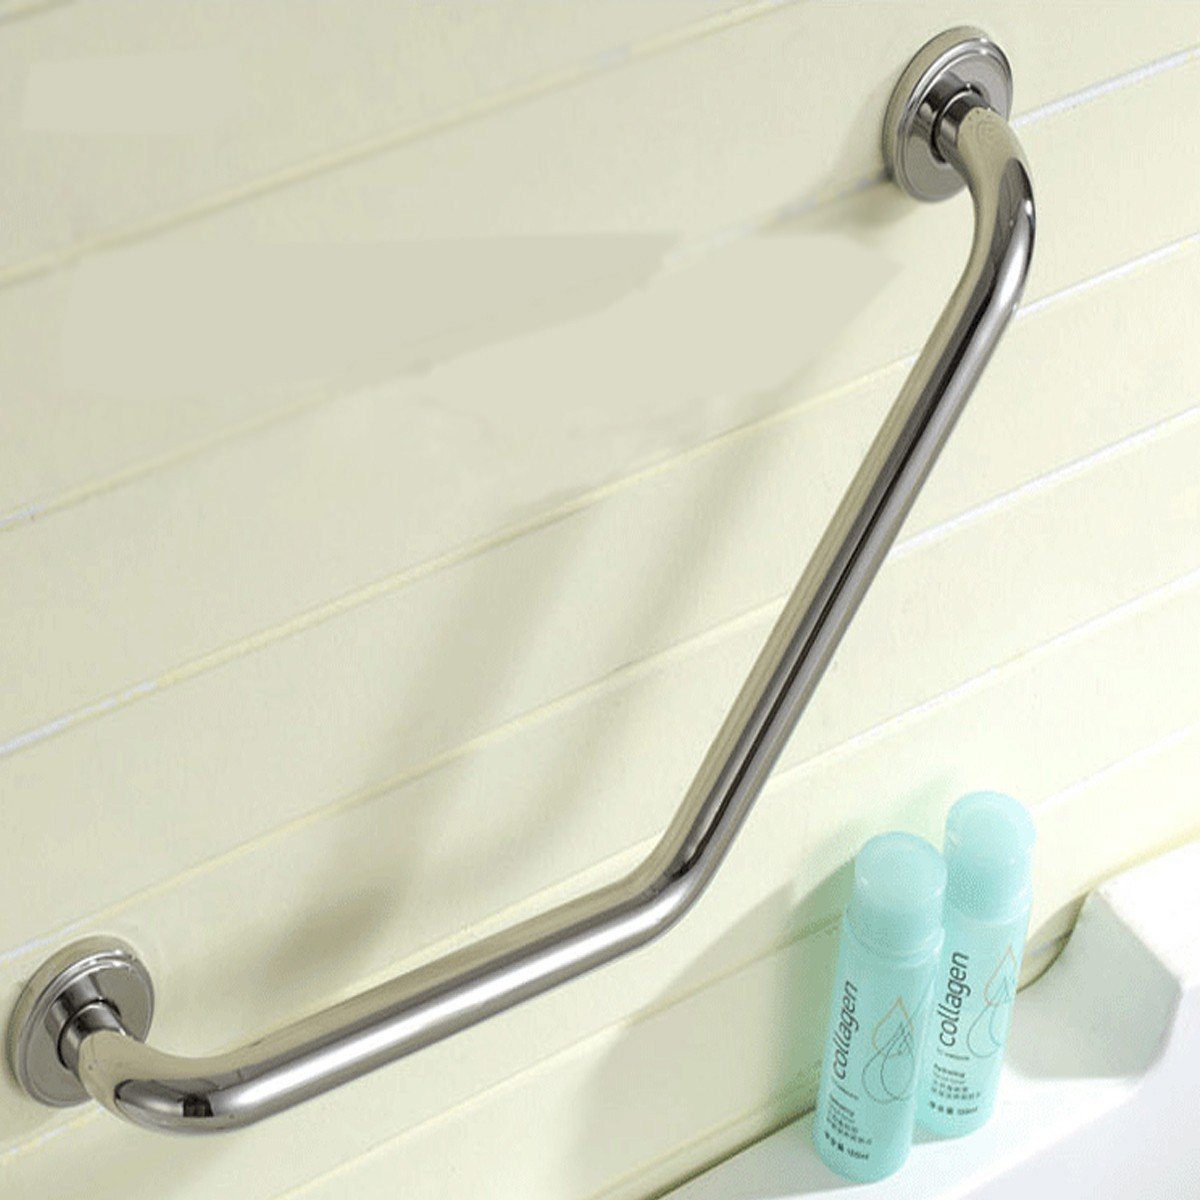 

Bathtub Arm Handle Grip Bath Shower Tub Grab Bar Stainless Steel Bathroom Safety